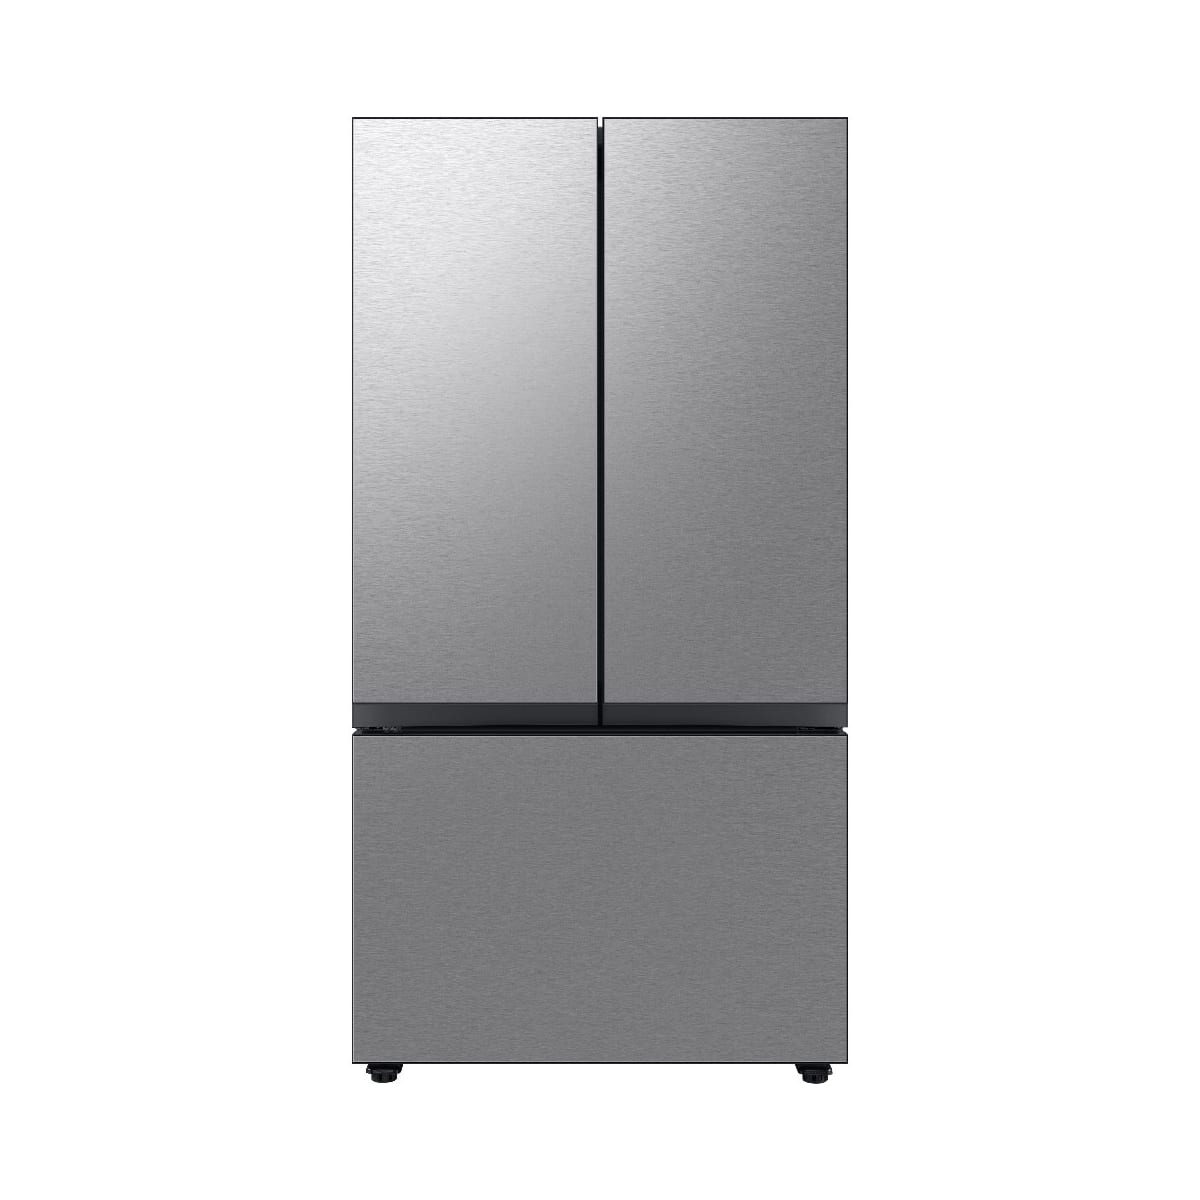 Samsung Bespoke 24 cu. ft. 3-Door French Door Smart Refrigerator